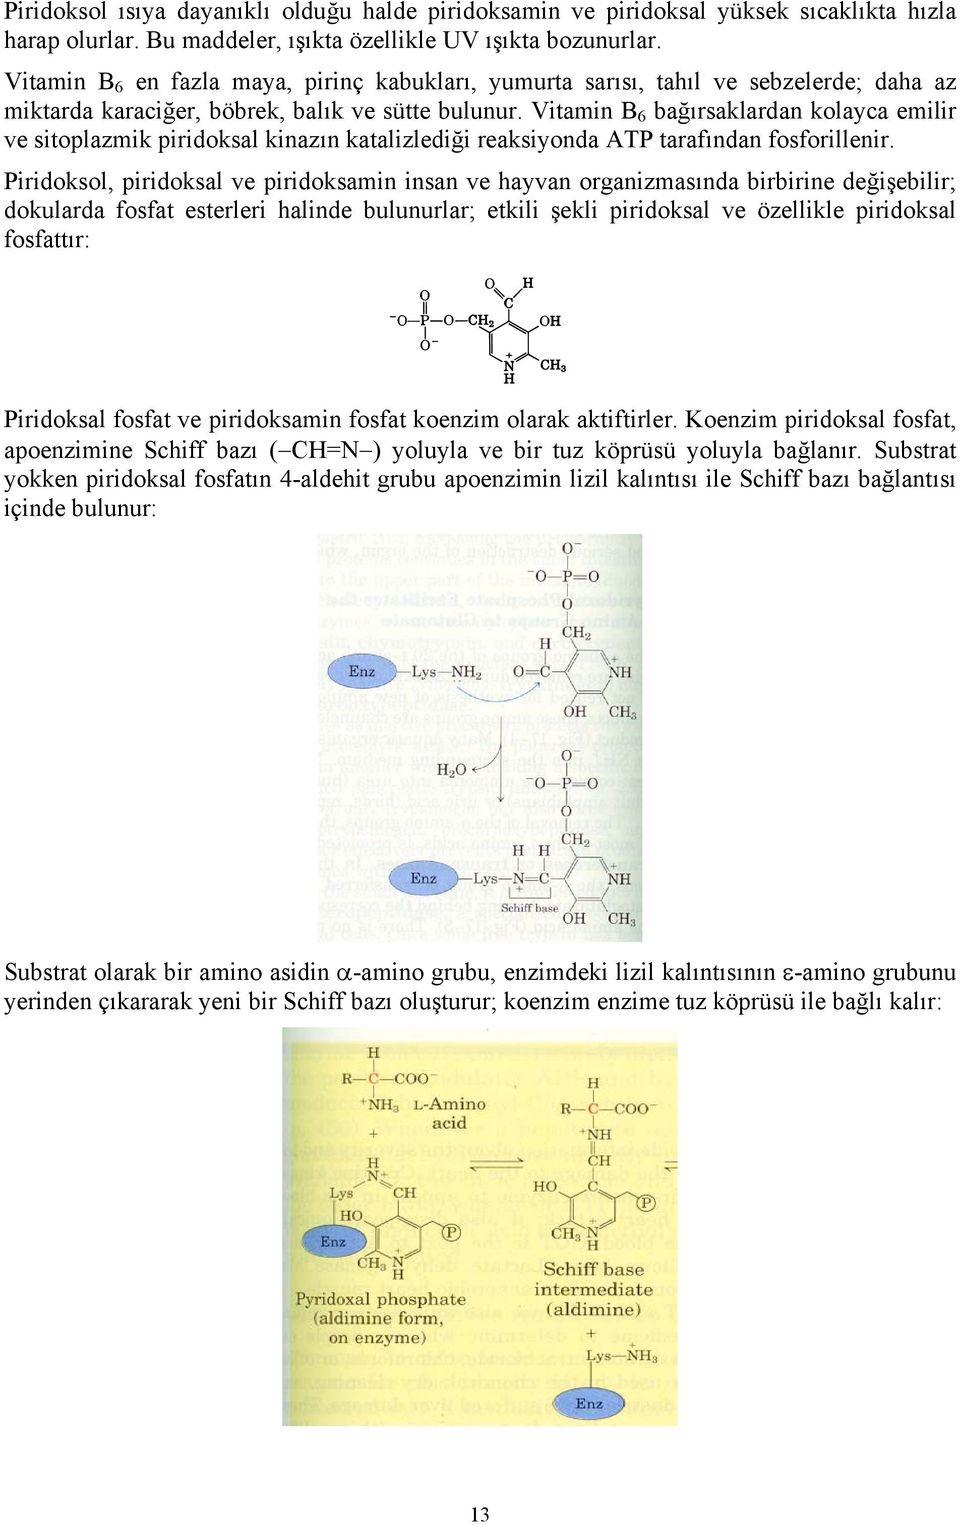 Vitamin B 6 bağırsaklardan kolayca emilir ve sitoplazmik piridoksal kinazın katalizlediği reaksiyonda ATP tarafından fosforillenir.